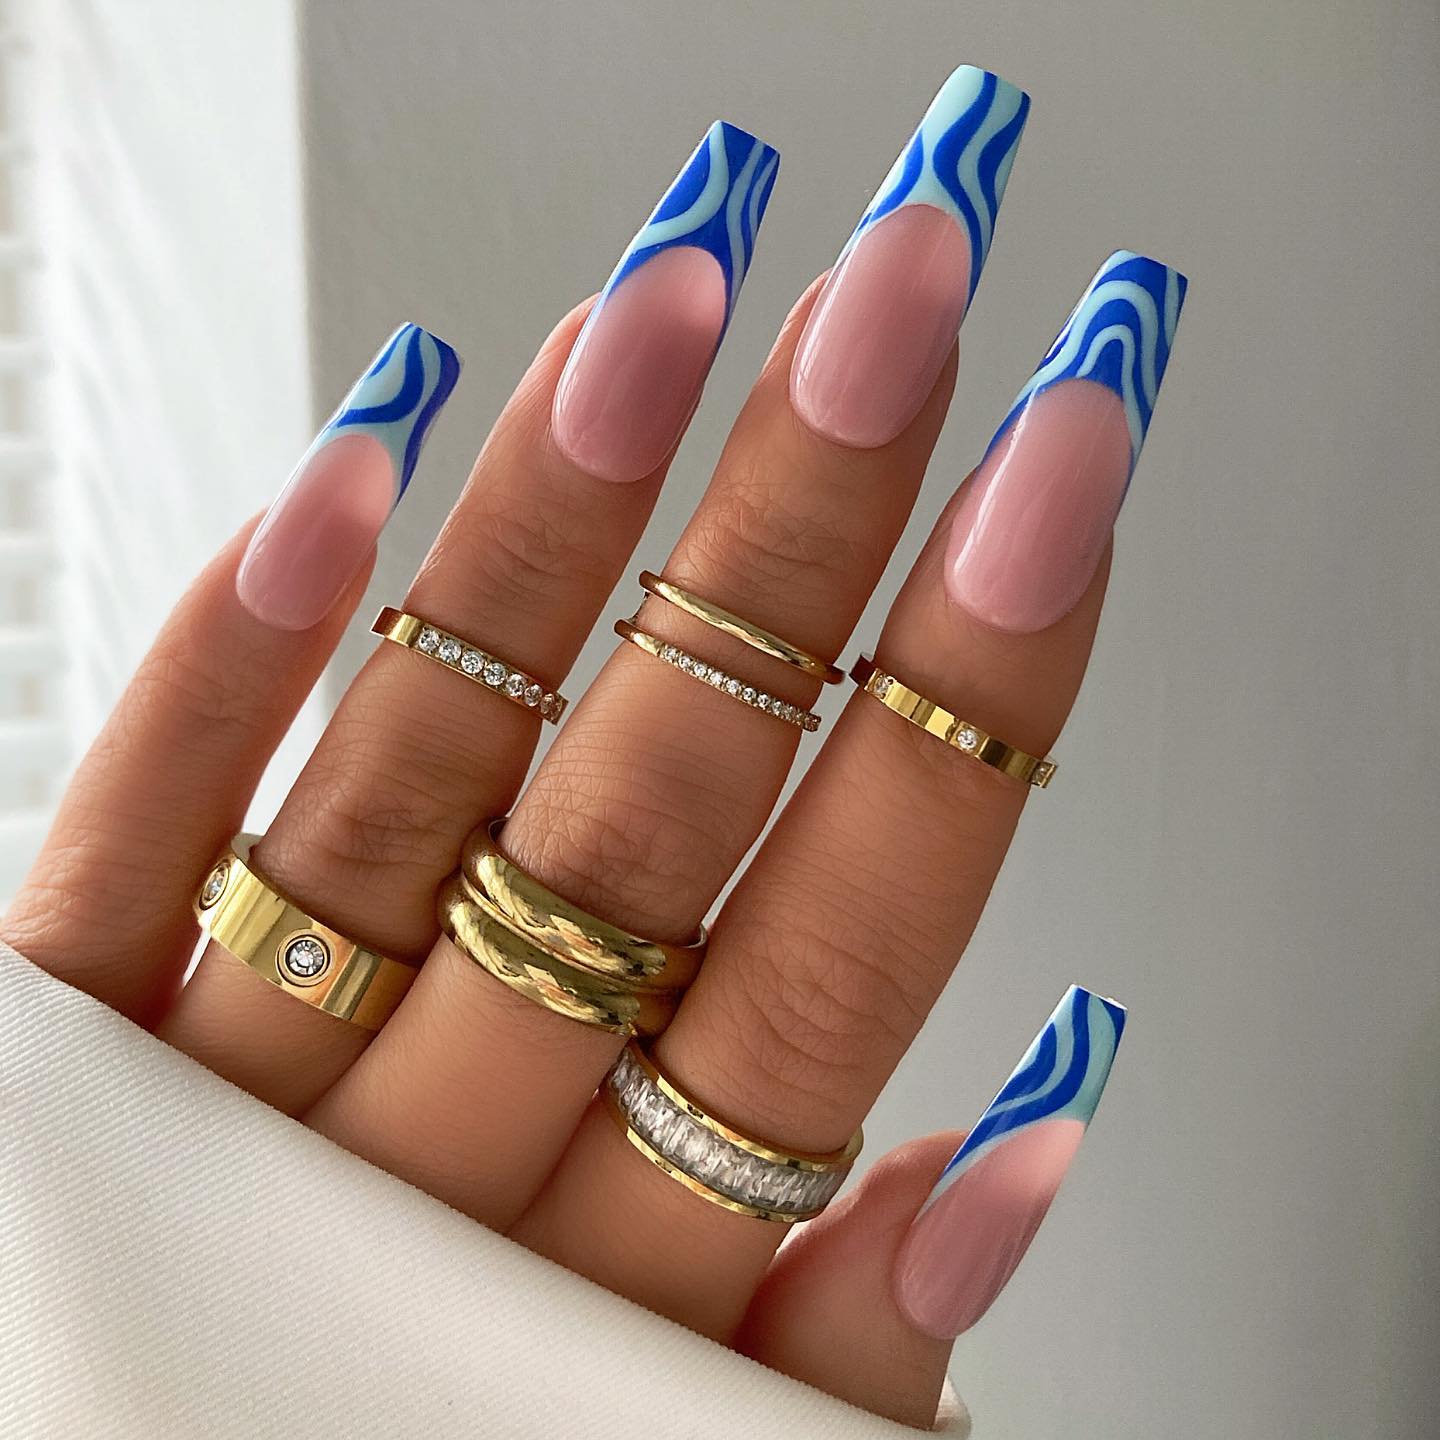 Franse nagels met blauwe geometrische wervelingen